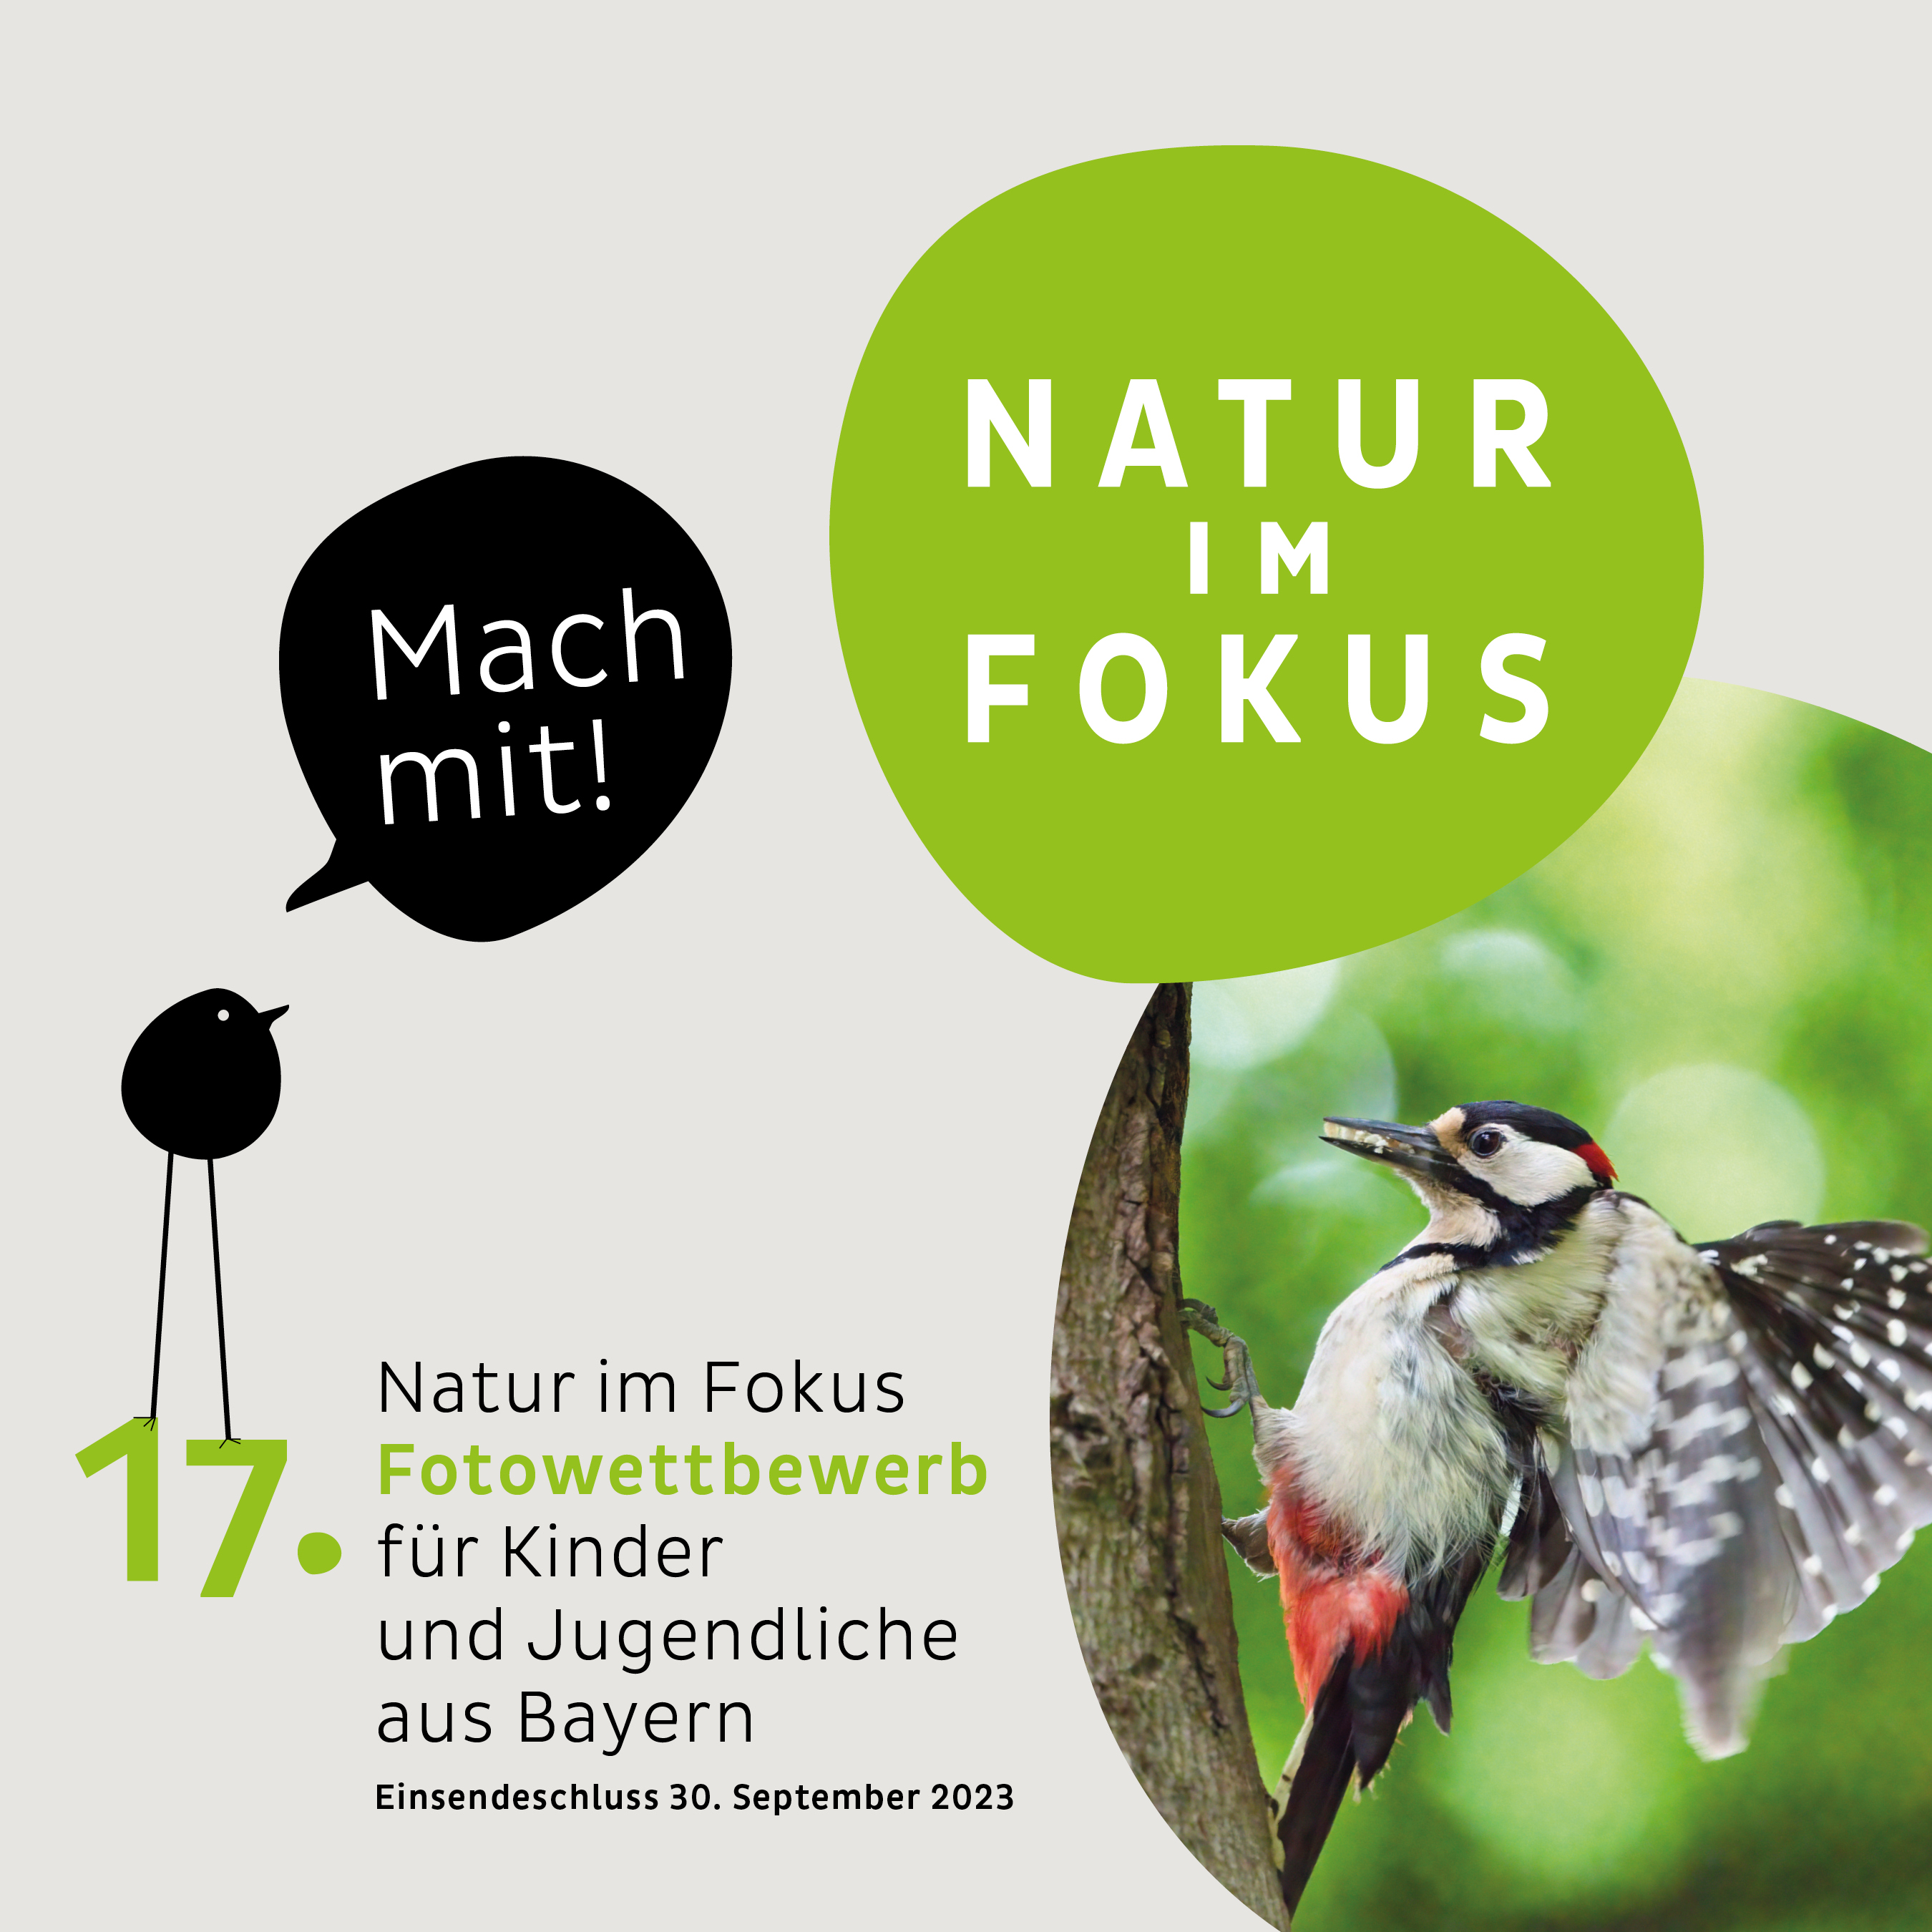 Auf geht’s: Start des 17. Fotowettbewerbs  - „Natur im Fokus“ für Kinder und Jugendliche aus Bayern